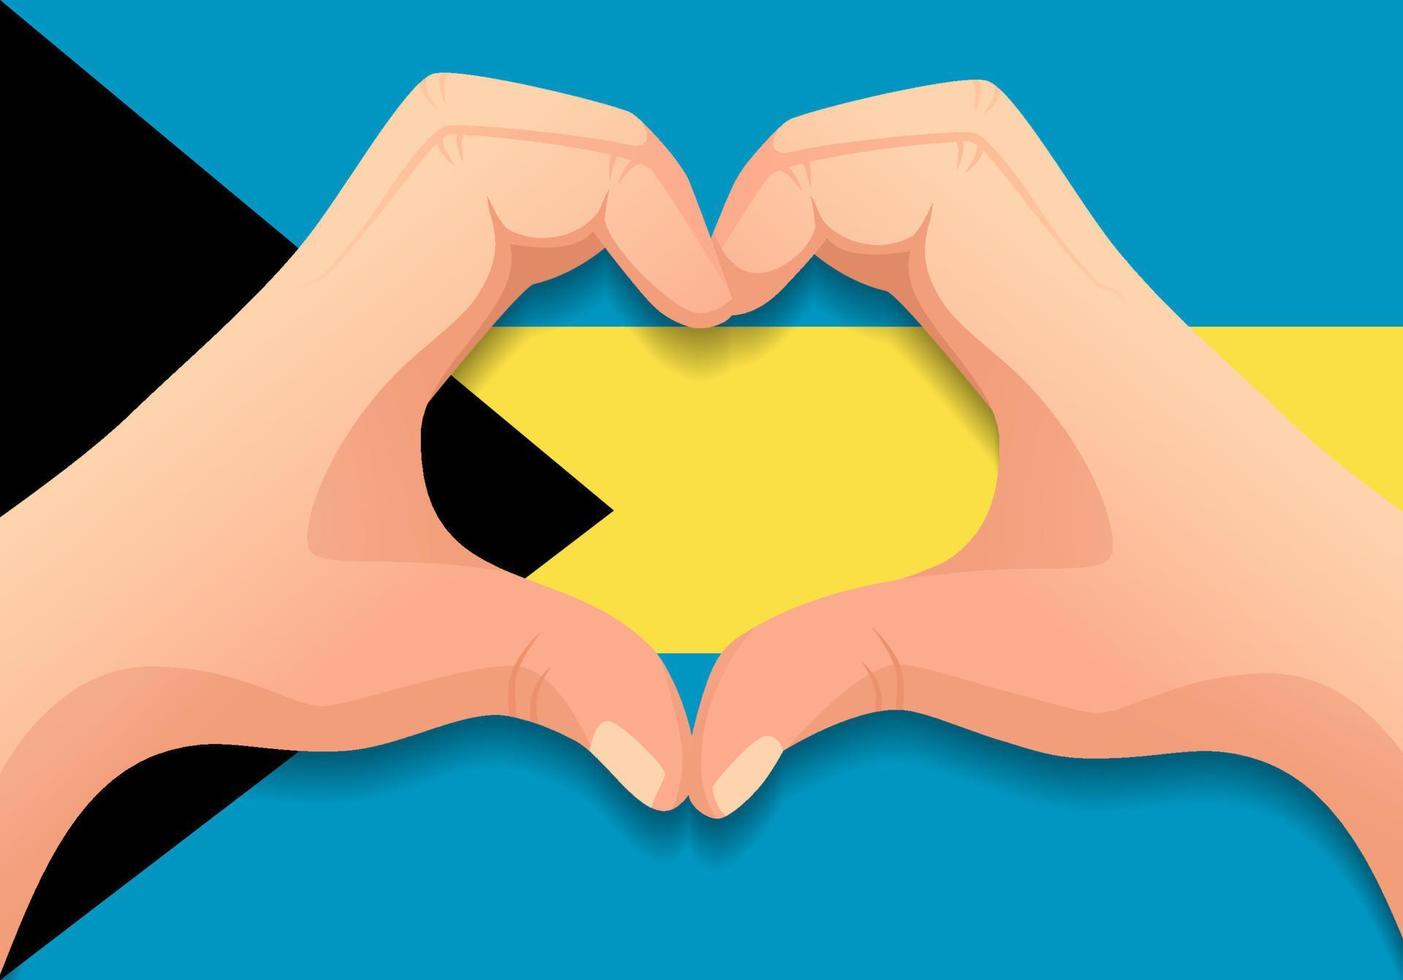 Bahamas flag and hand heart shape vector